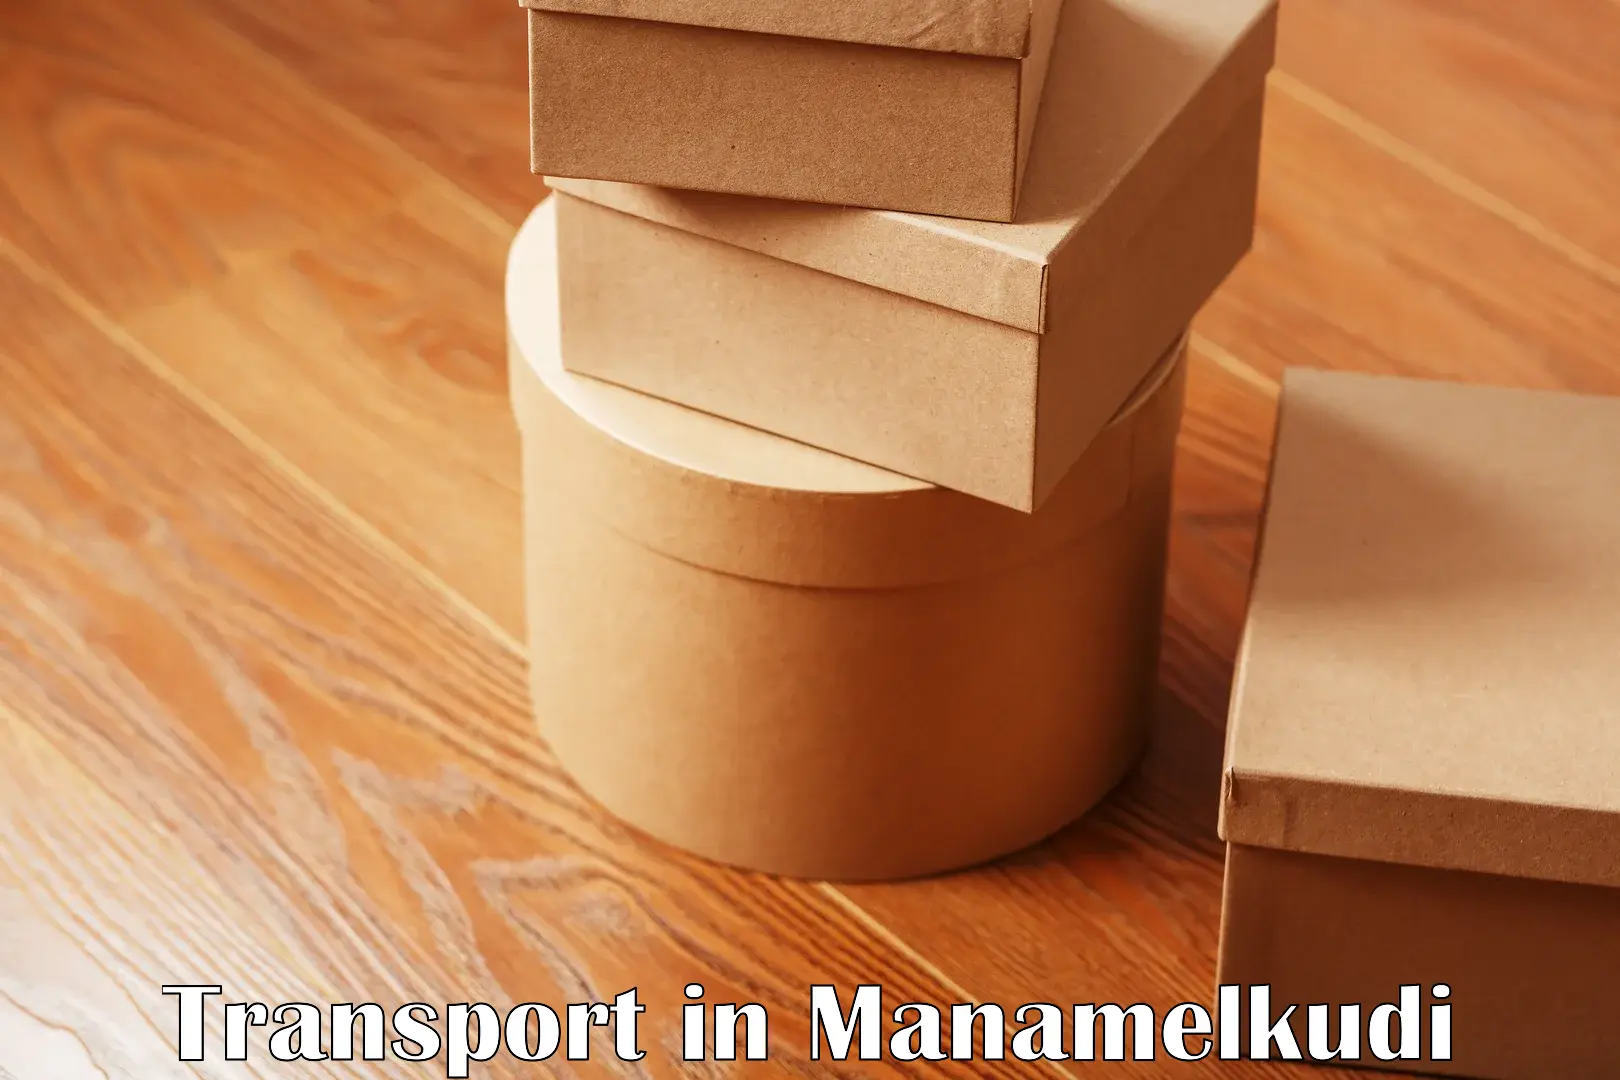 Cargo transport services in Manamelkudi